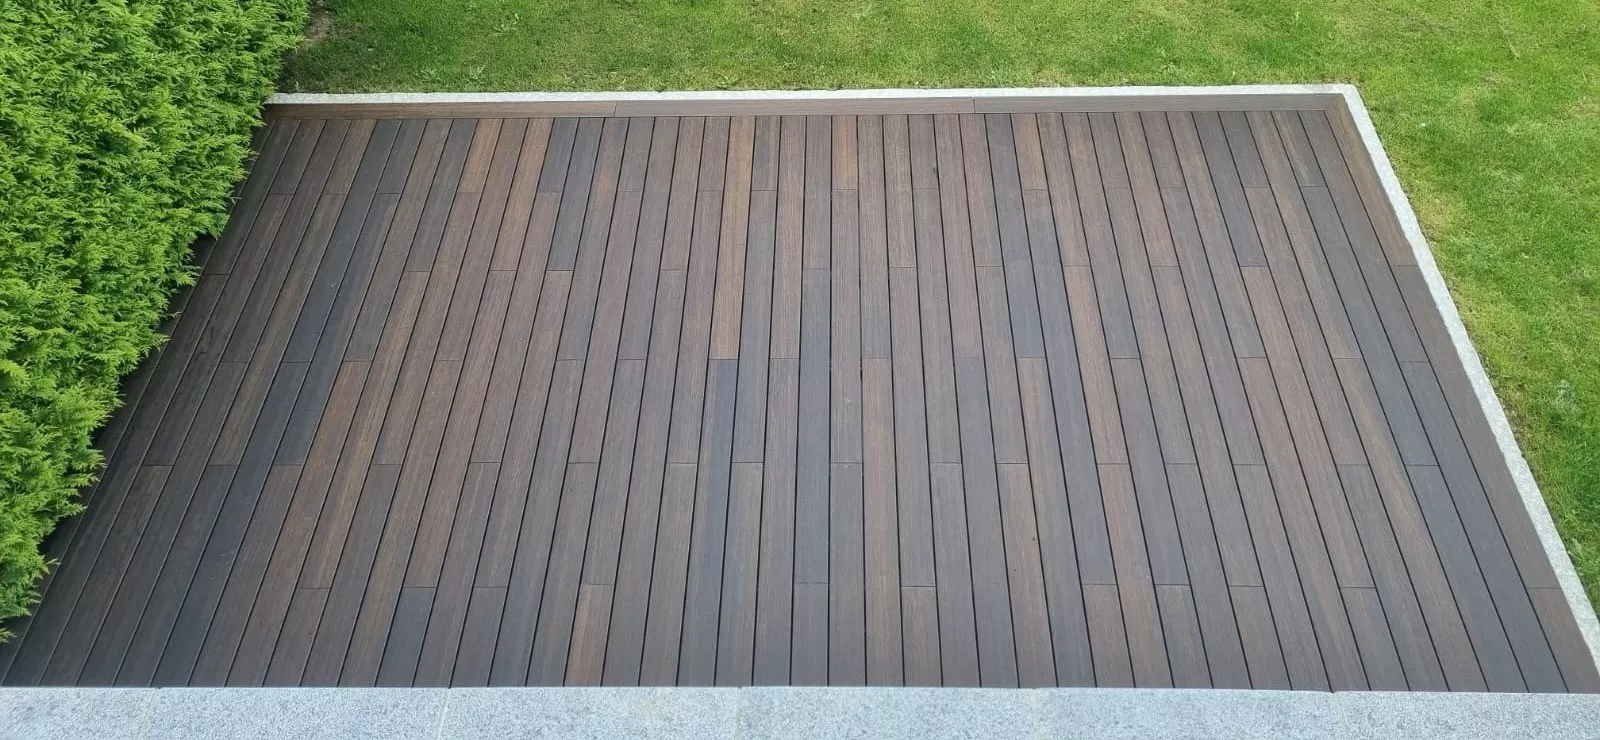 Image for Découvrez la terrasse en bois système GRAD, alliant esthétisme et durabilité